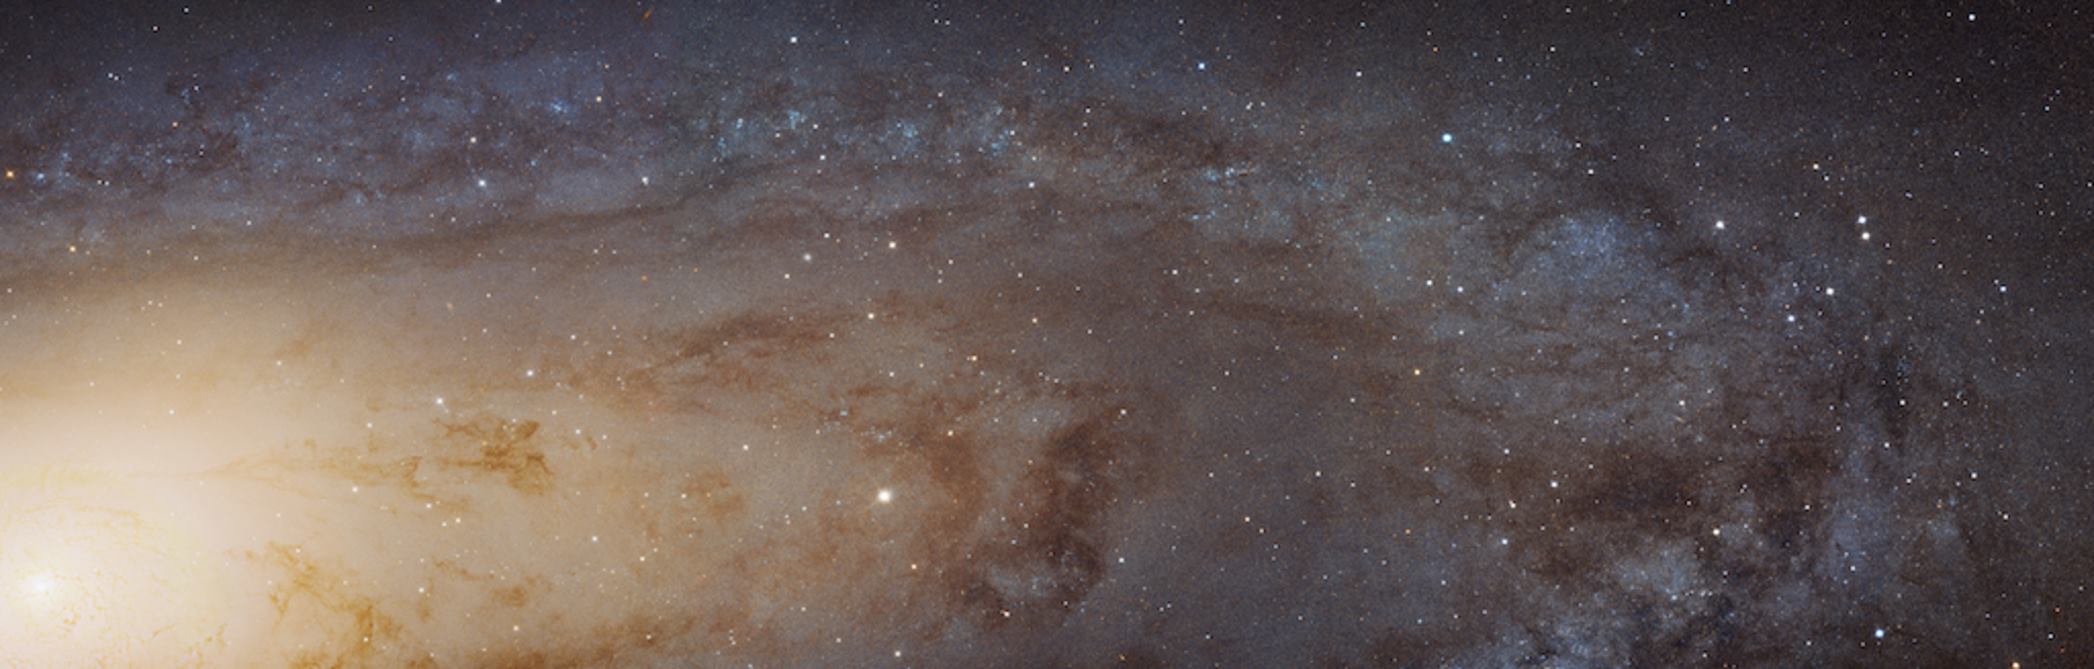 Andromeda galaksisi